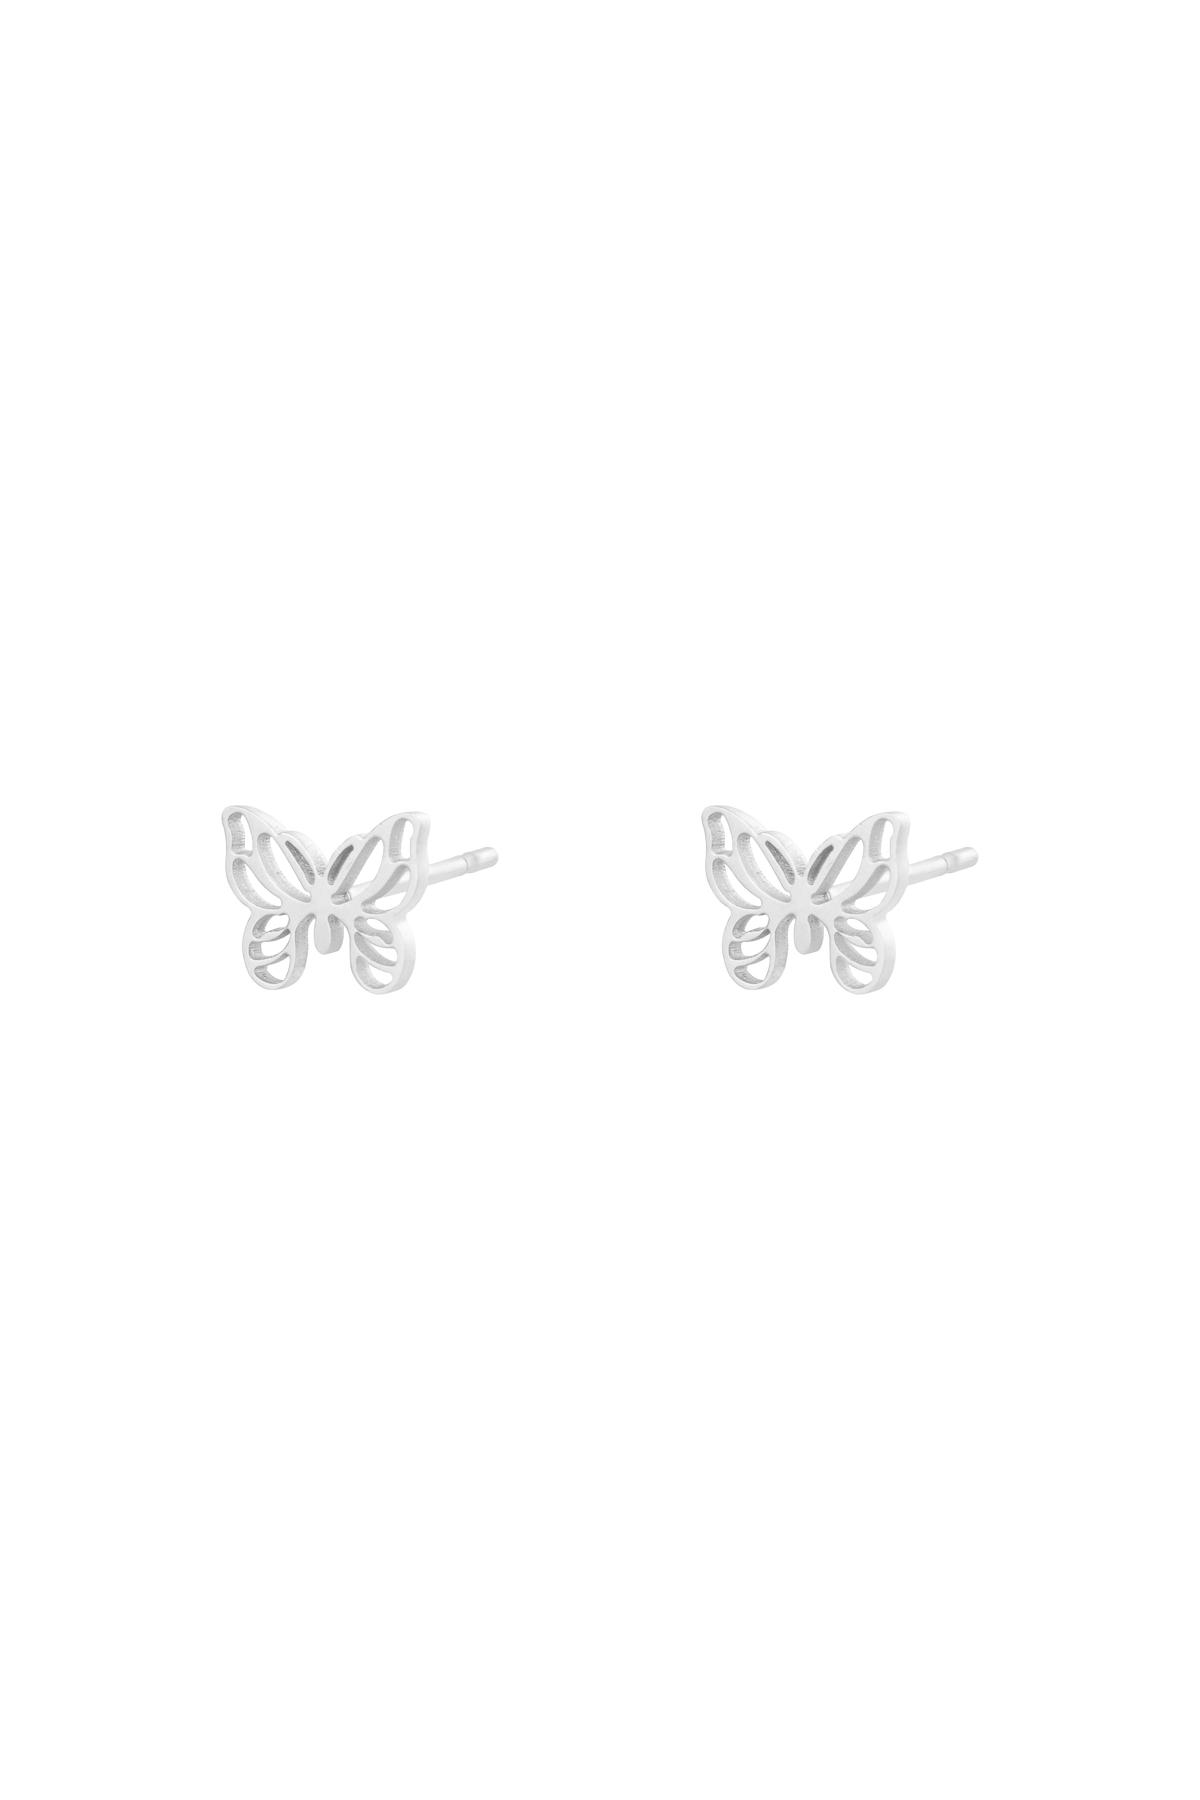 Earrings Little Butterfly Silver Stainless Steel h5 